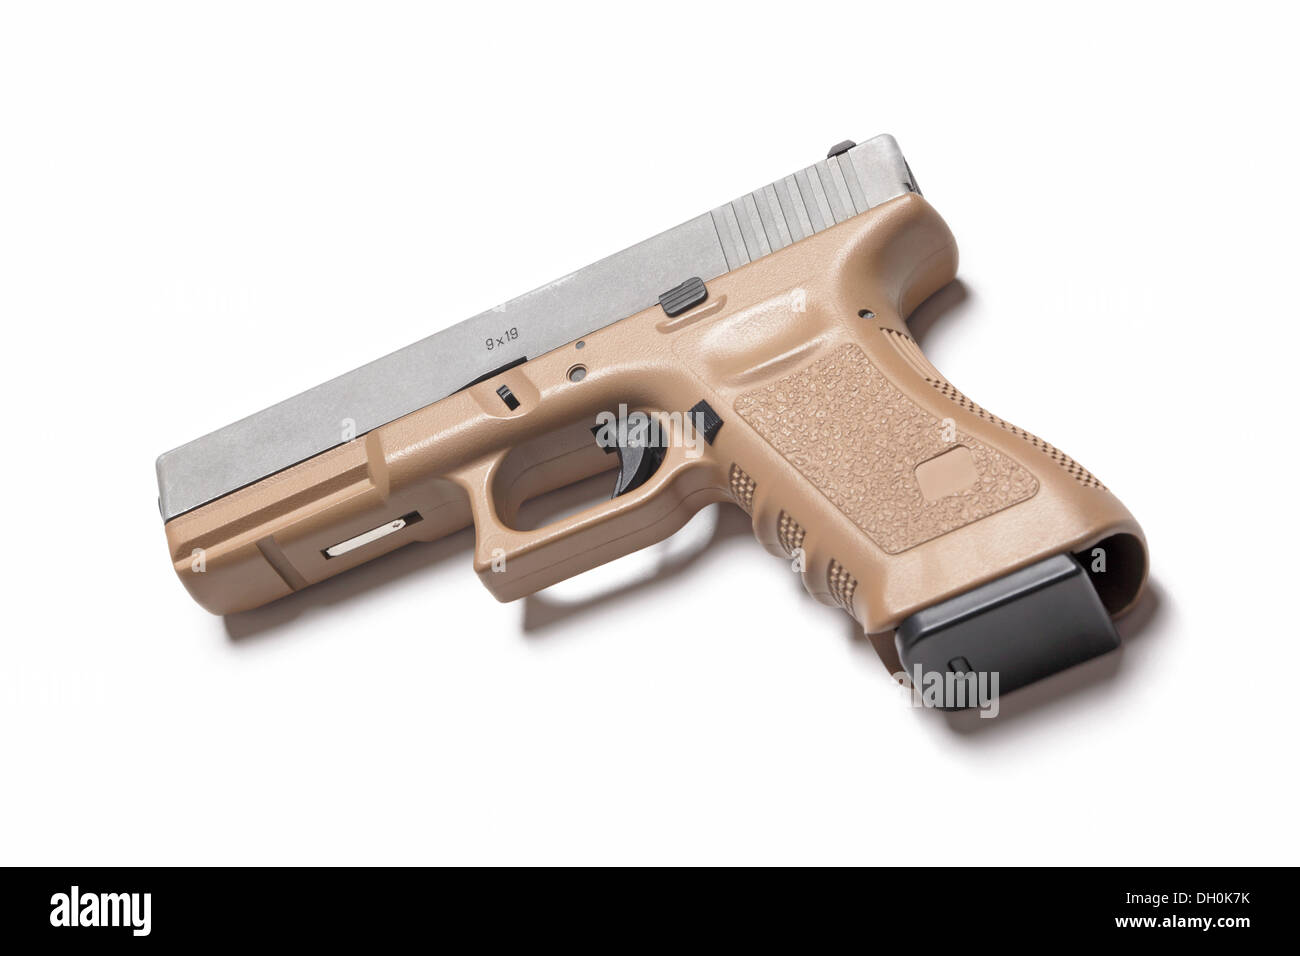 Glock 9mm pistola aislado en blanco, Foto de estudio Foto de stock